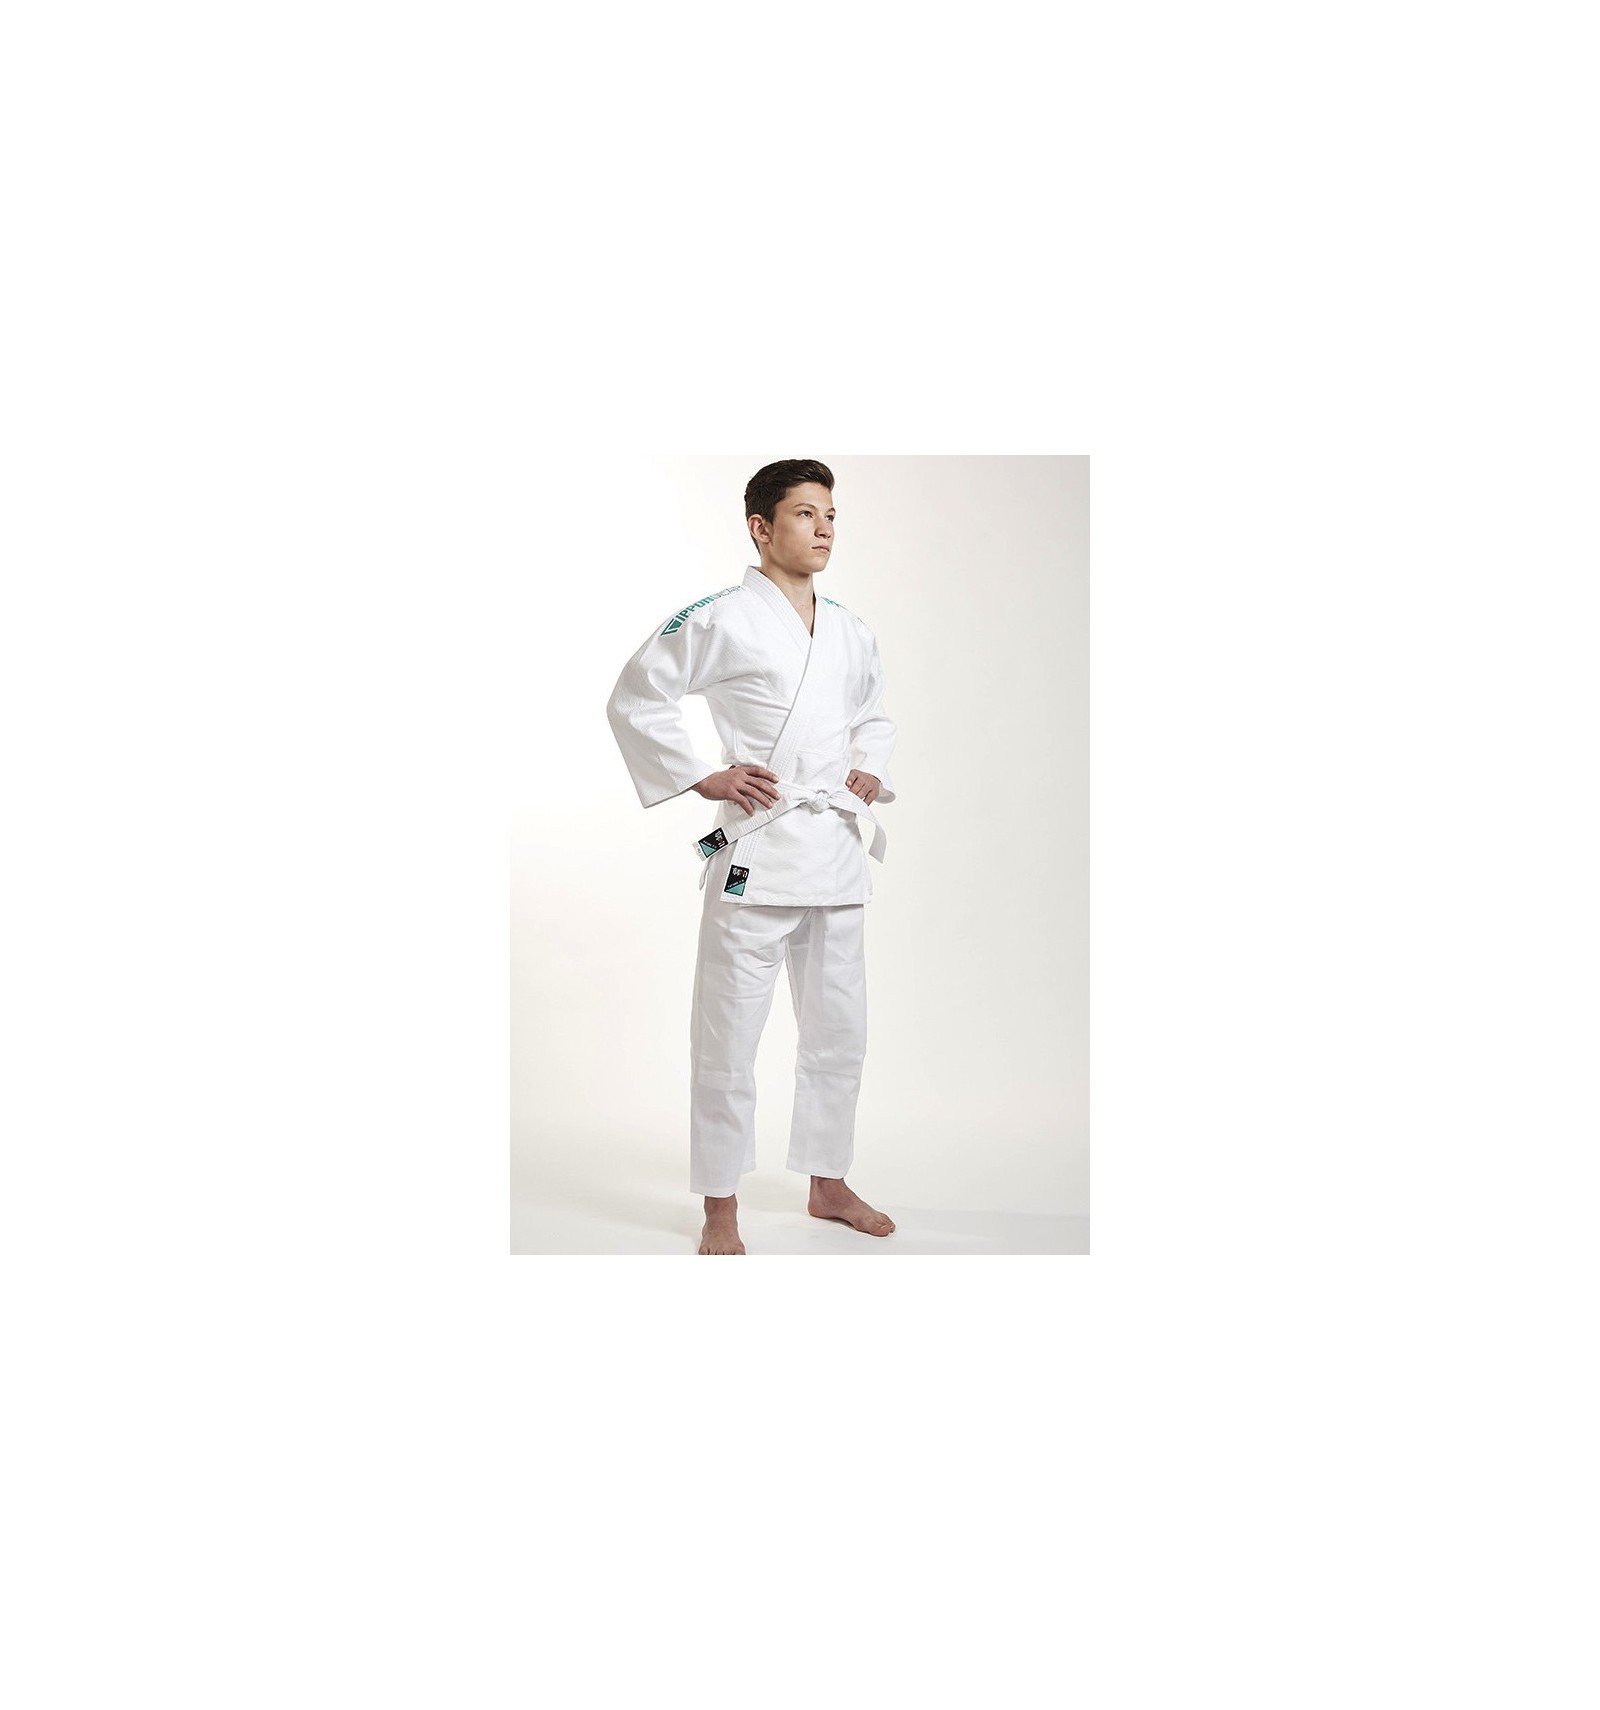 Deliberar Palmadita rojo IPPON GEAR Future Judo Uniform